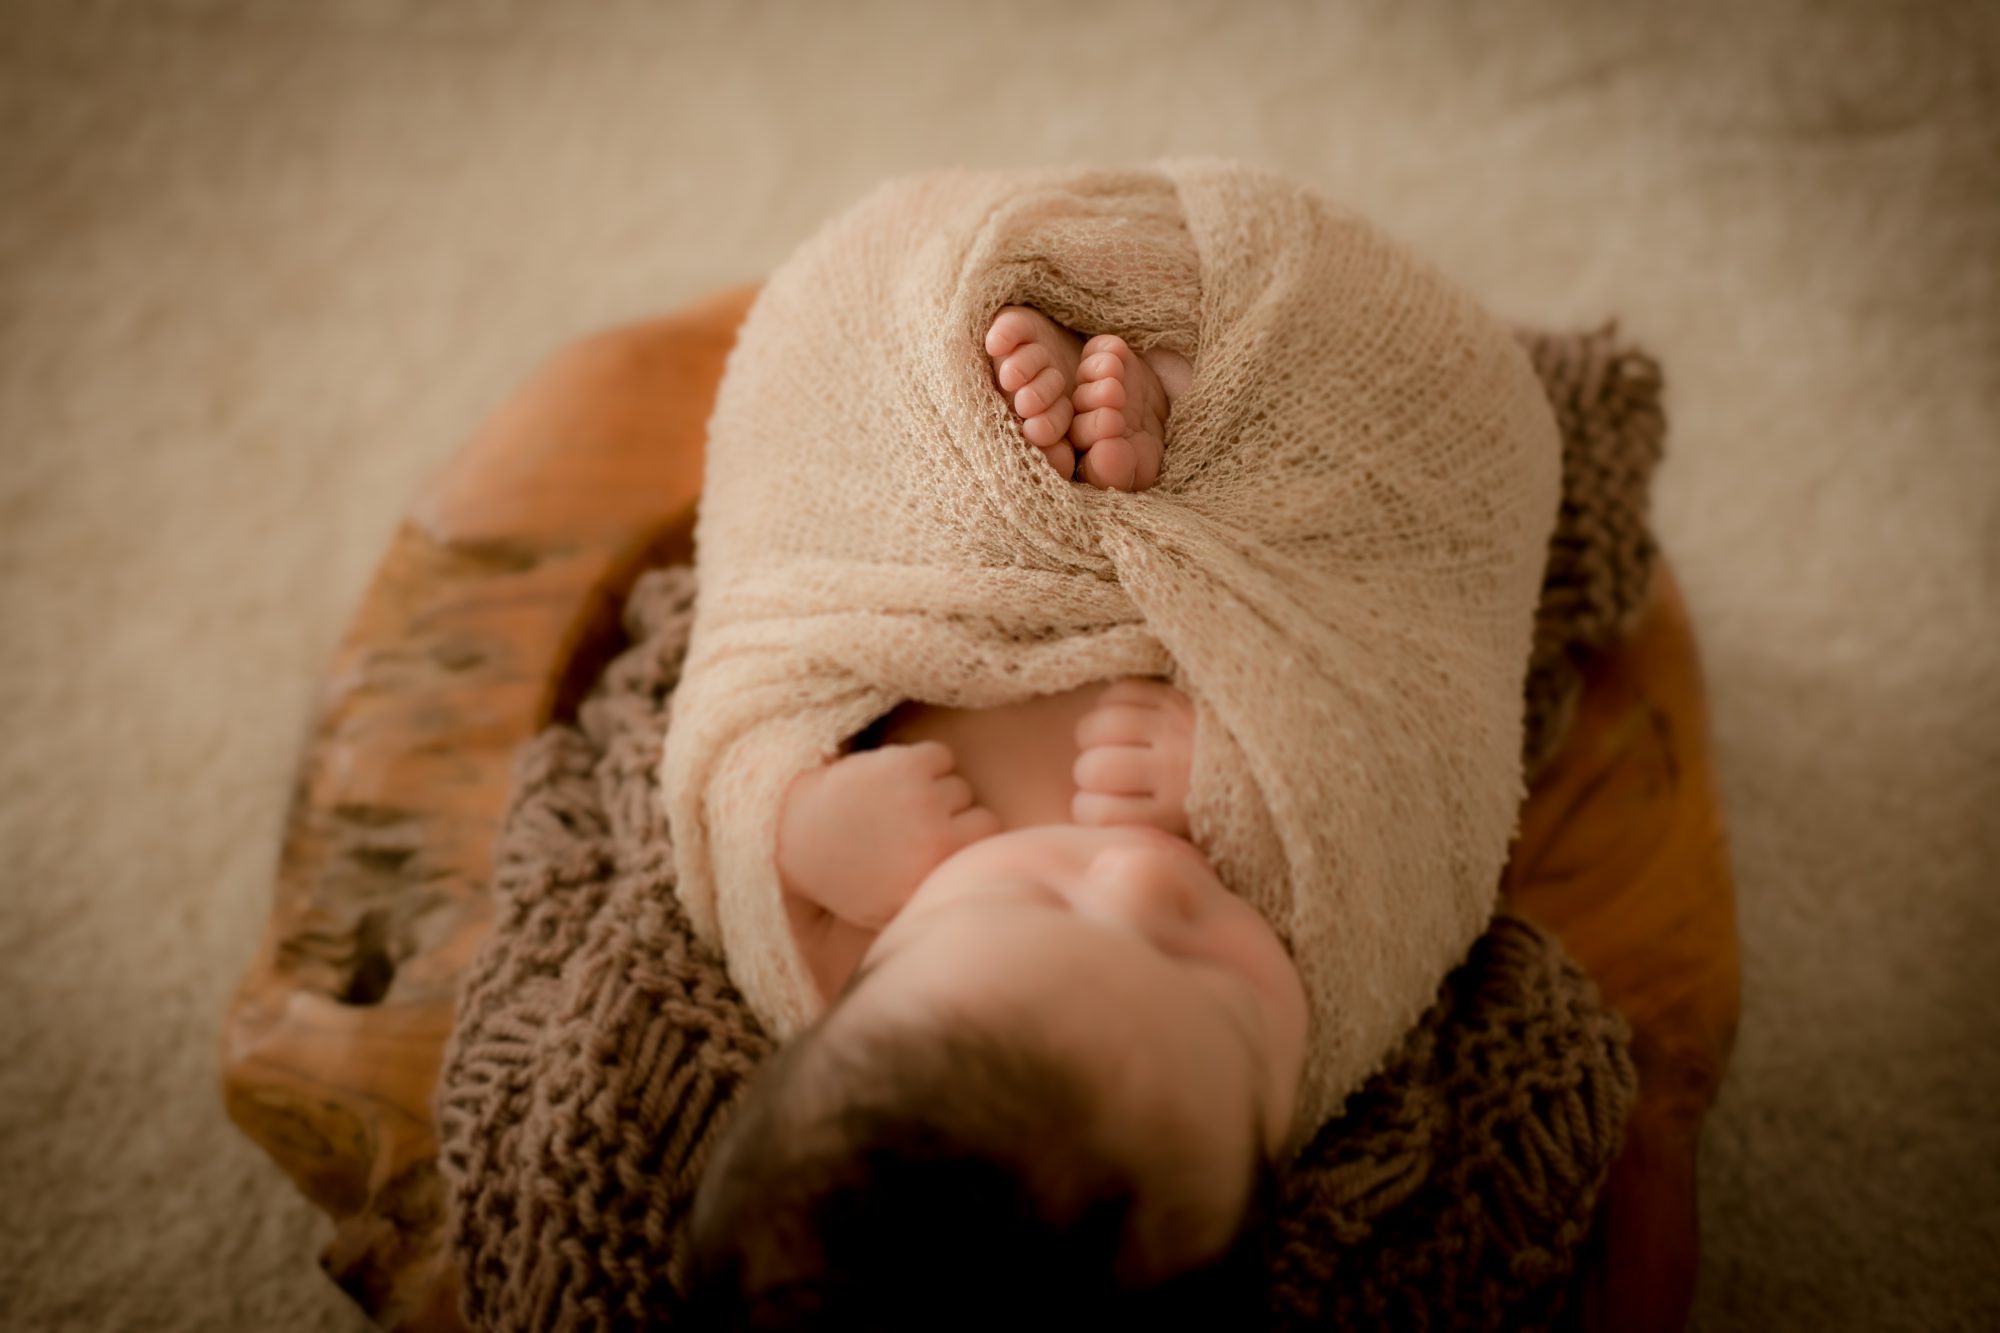 baby fotoshooting newborn fotostudio bilifotos.ch luzern baby foto zeigt wie baby liegt im koerbchen braun